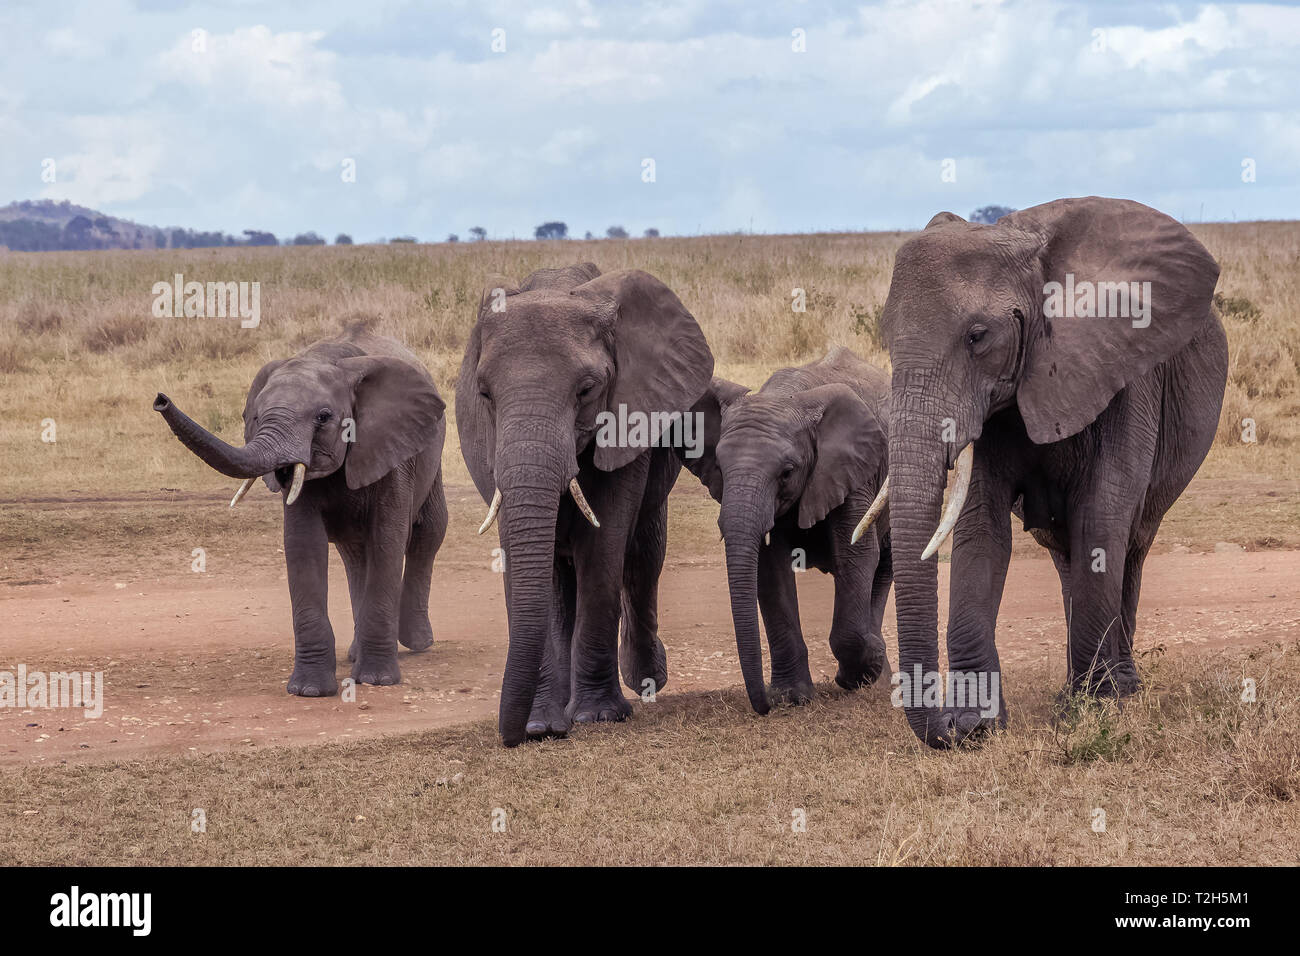 L'éléphant est le plus grand mammifère terrestre. Avec sa trompe, il peut non seulement l'odeur, mais aussi se sentir et comprendre. Les éléphants ont un comportement social. Banque D'Images